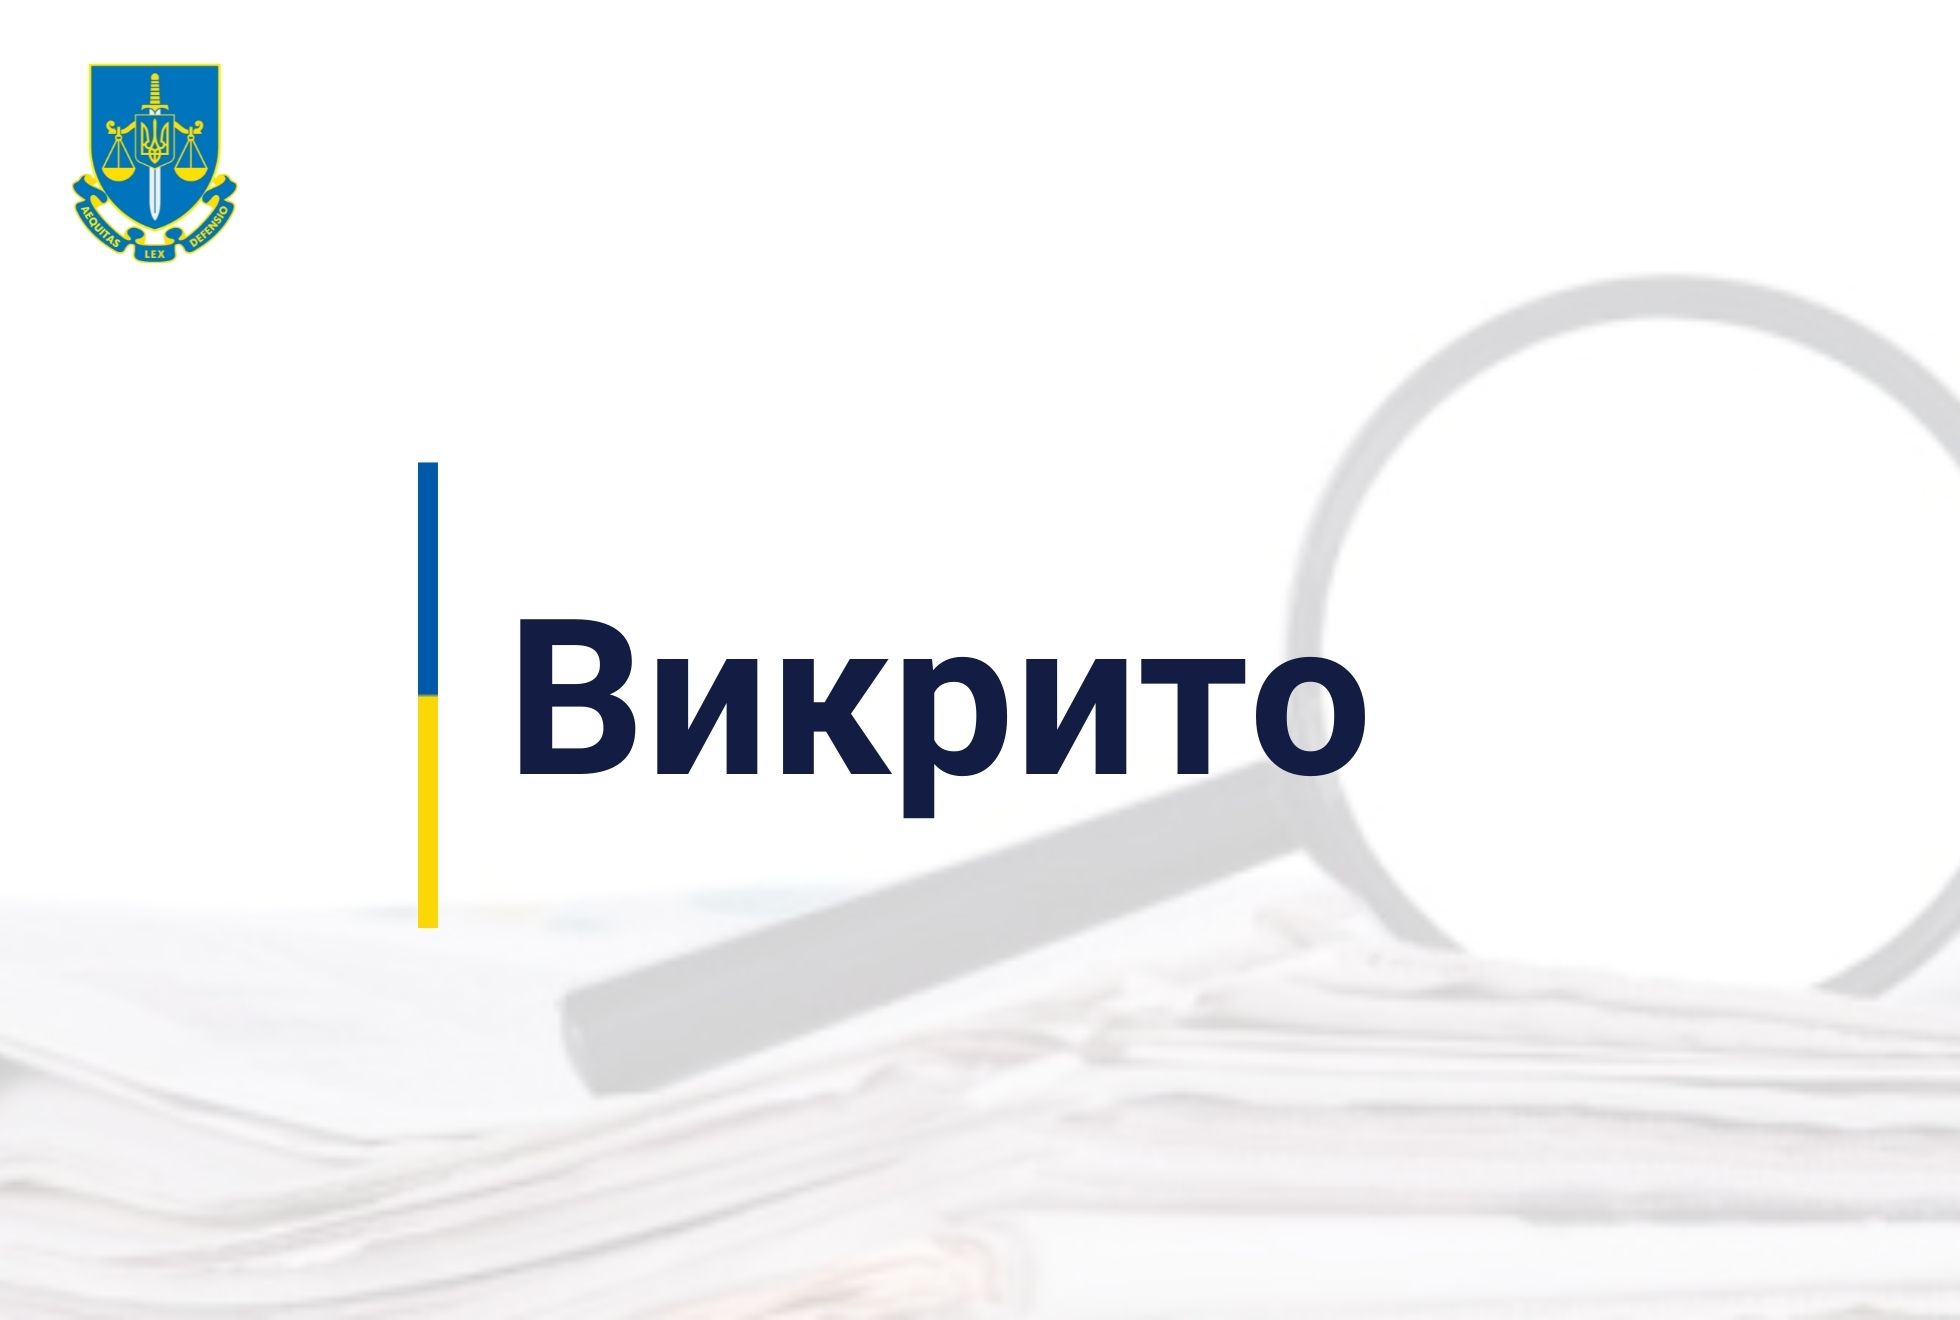 Хабар за зміну обвинувачення в суді – викрито прокурора на Дніпропетровщині